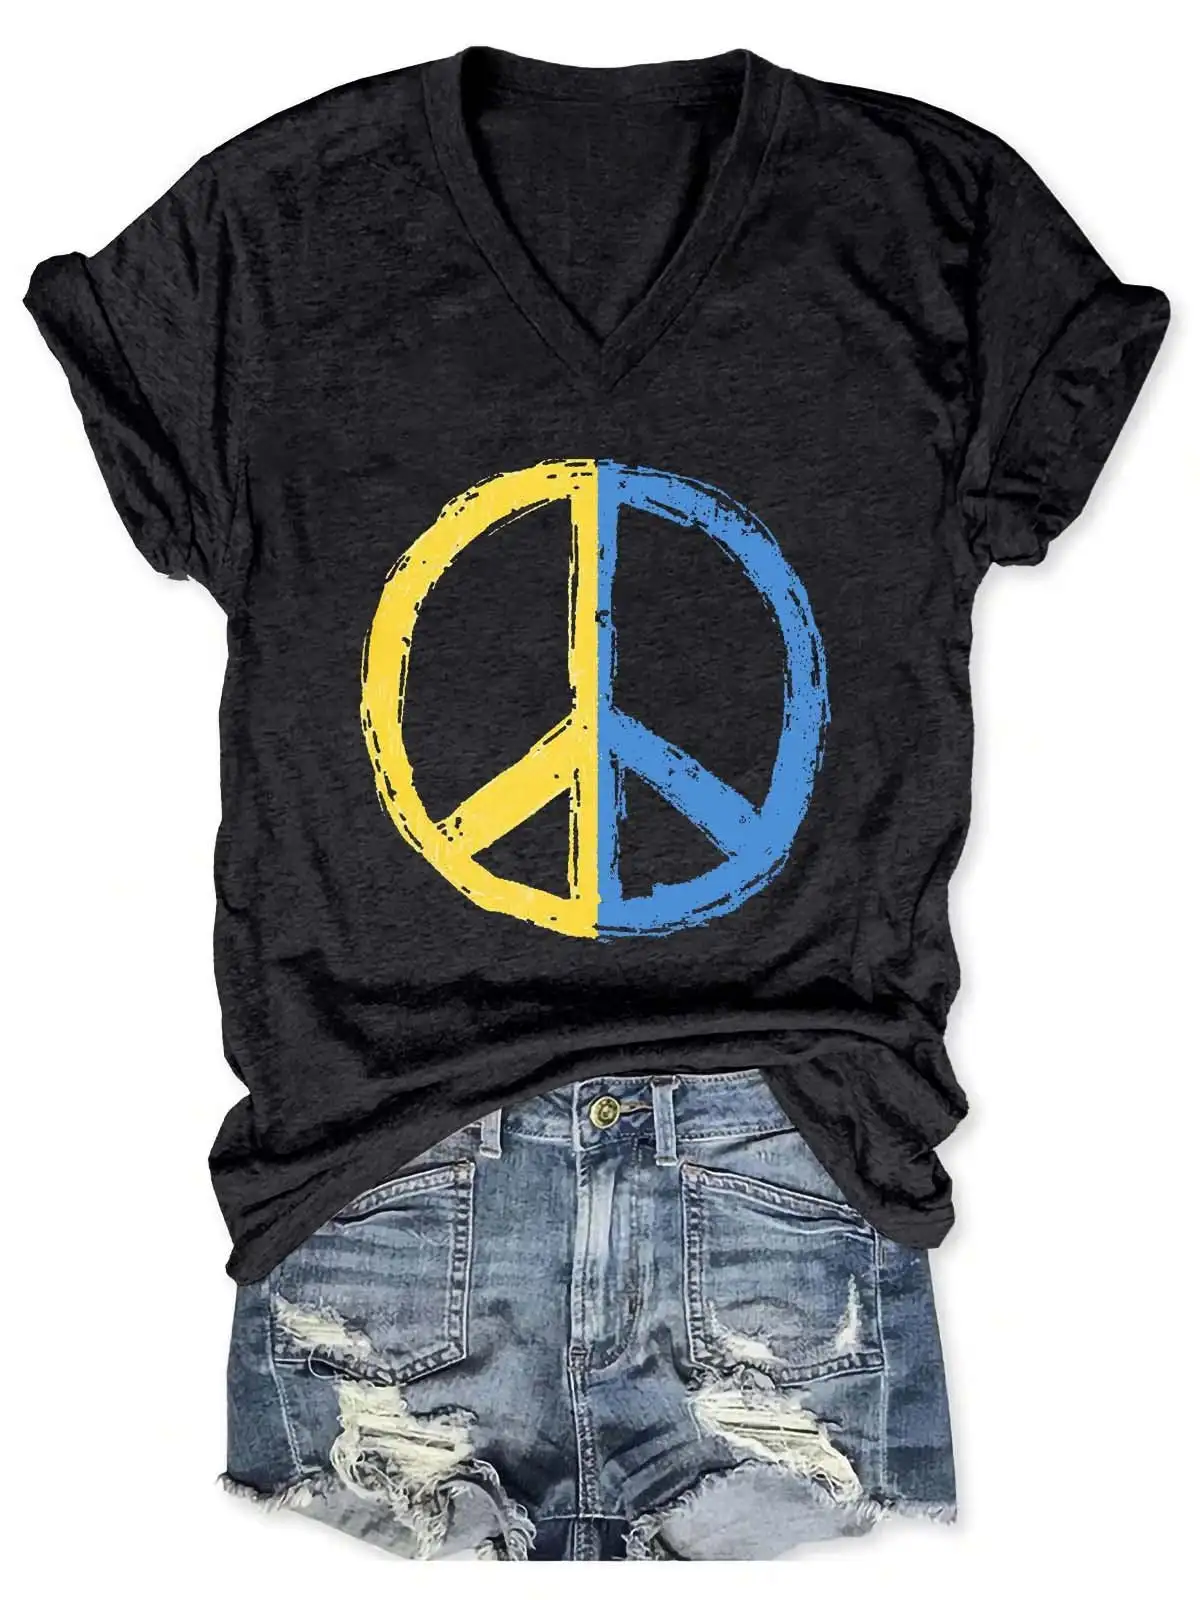 Lovessales Womens UKR Peace V-Neck Short Sleeve 100% Cotton T-shirt